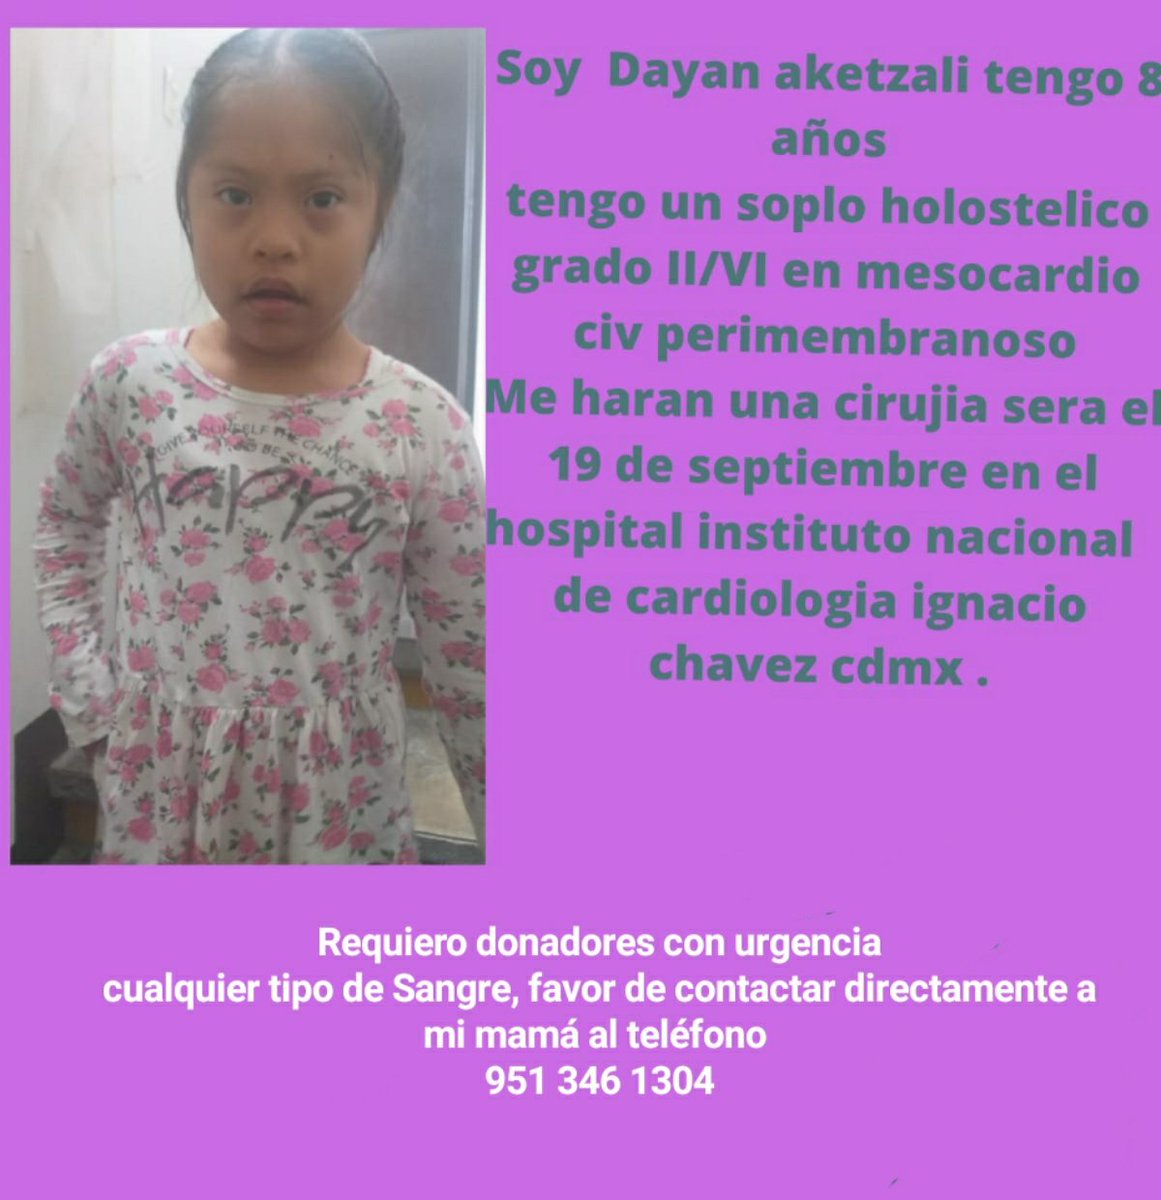 #DonadorVoluntario  #CDMX apoyanos compartiendo es súper urgente la pequeña Dayan de 8  años, tiene que ser operada de manera urgente del corazón. Ayúdanos por favor. #buscamosheroes #DonaPlaquetas #donasangre concausa.mx